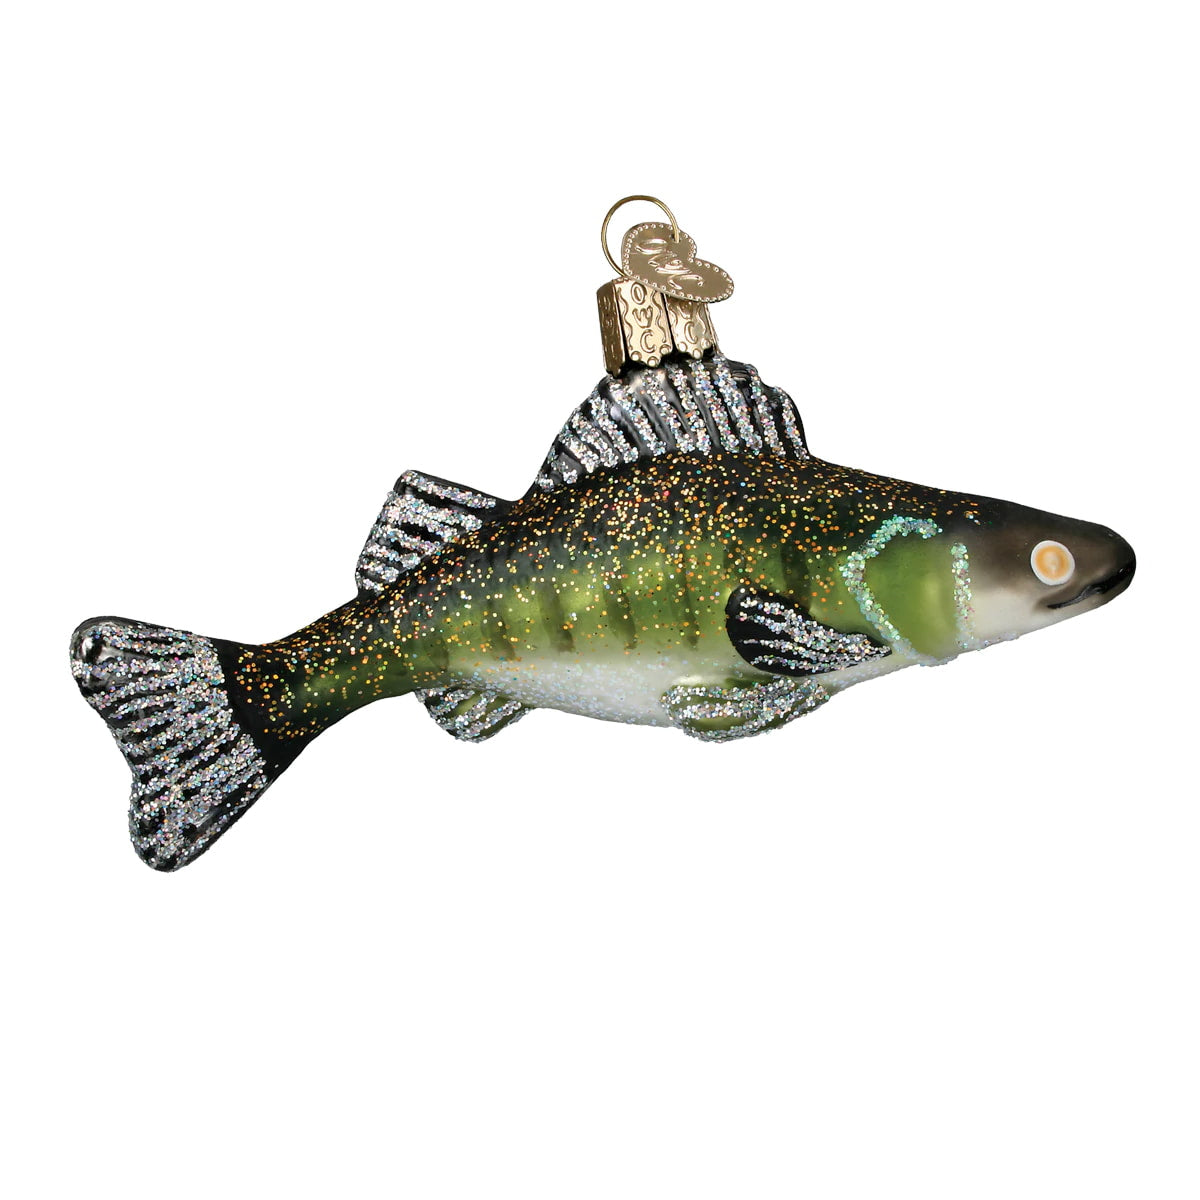 Walleye Fish Ornament